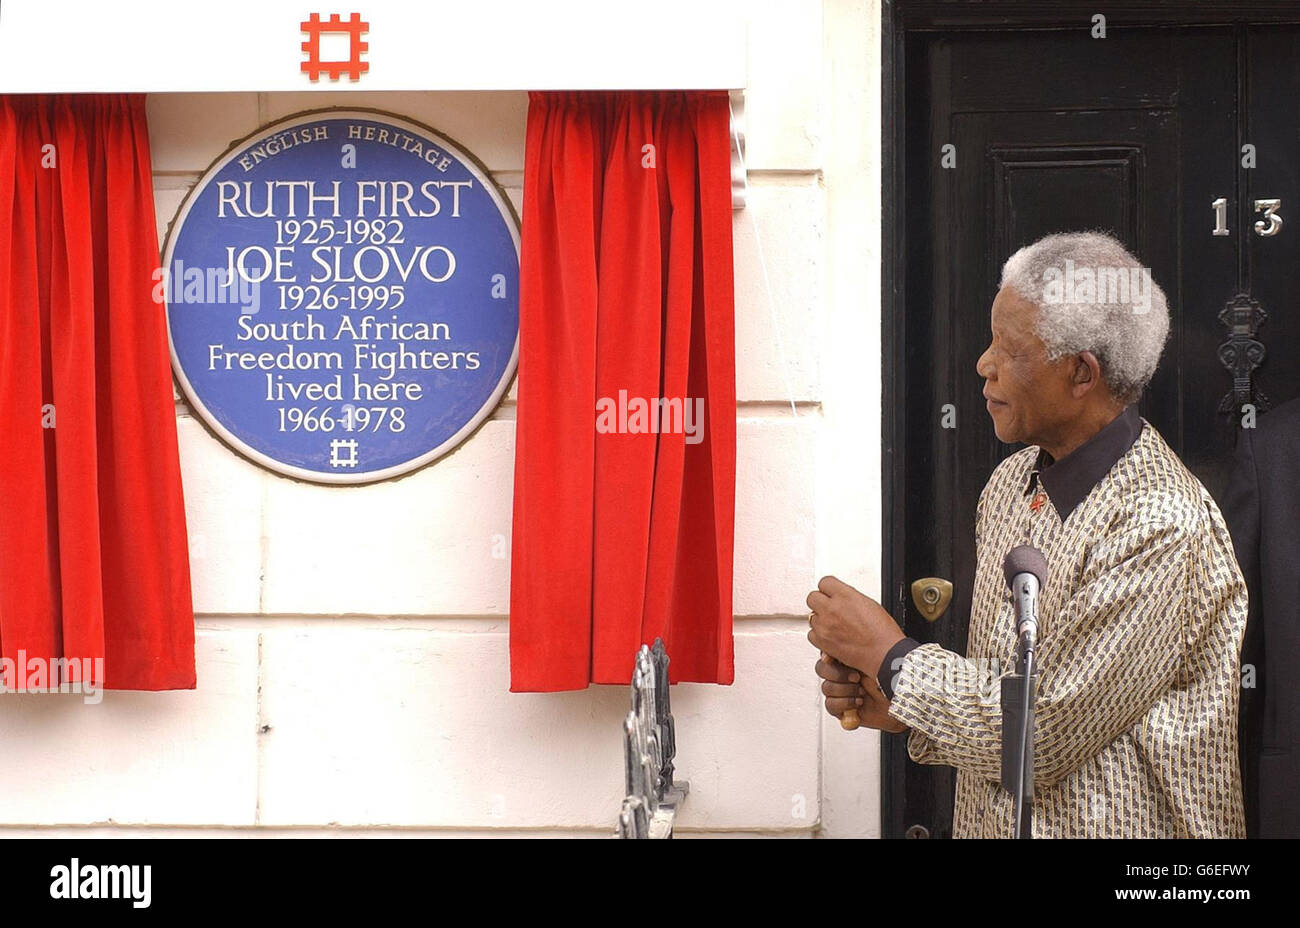 Nelson Mandela zollte zwei prominenten Anti-Apartheid-Aktivisten in ihrem ehemaligen Zuhause in Camden, im Norden Londons, eine persönliche Anerkennung, indem er ihnen eine Gedenktafel enthüllte. * der ehemalige südafrikanische Präsident enthüllte die blaue Tafel in der Lime Street 13, wo Ruth First und ihr Mann Joe Slovo zwischen 1966 und 1978 lebten. Stockfoto